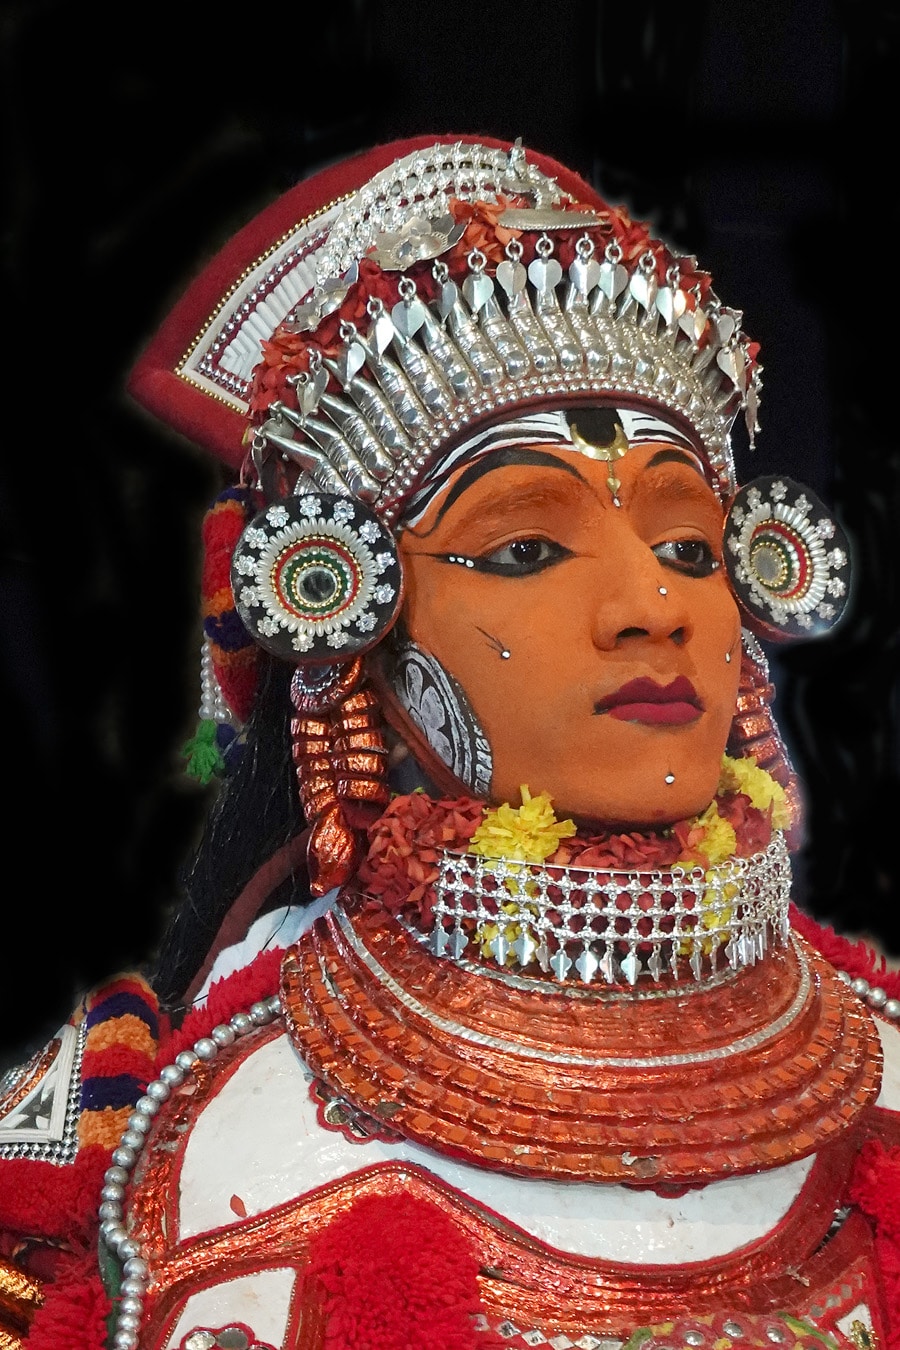 visage performer ghandakarnan vellatam Azhikkal Kannur